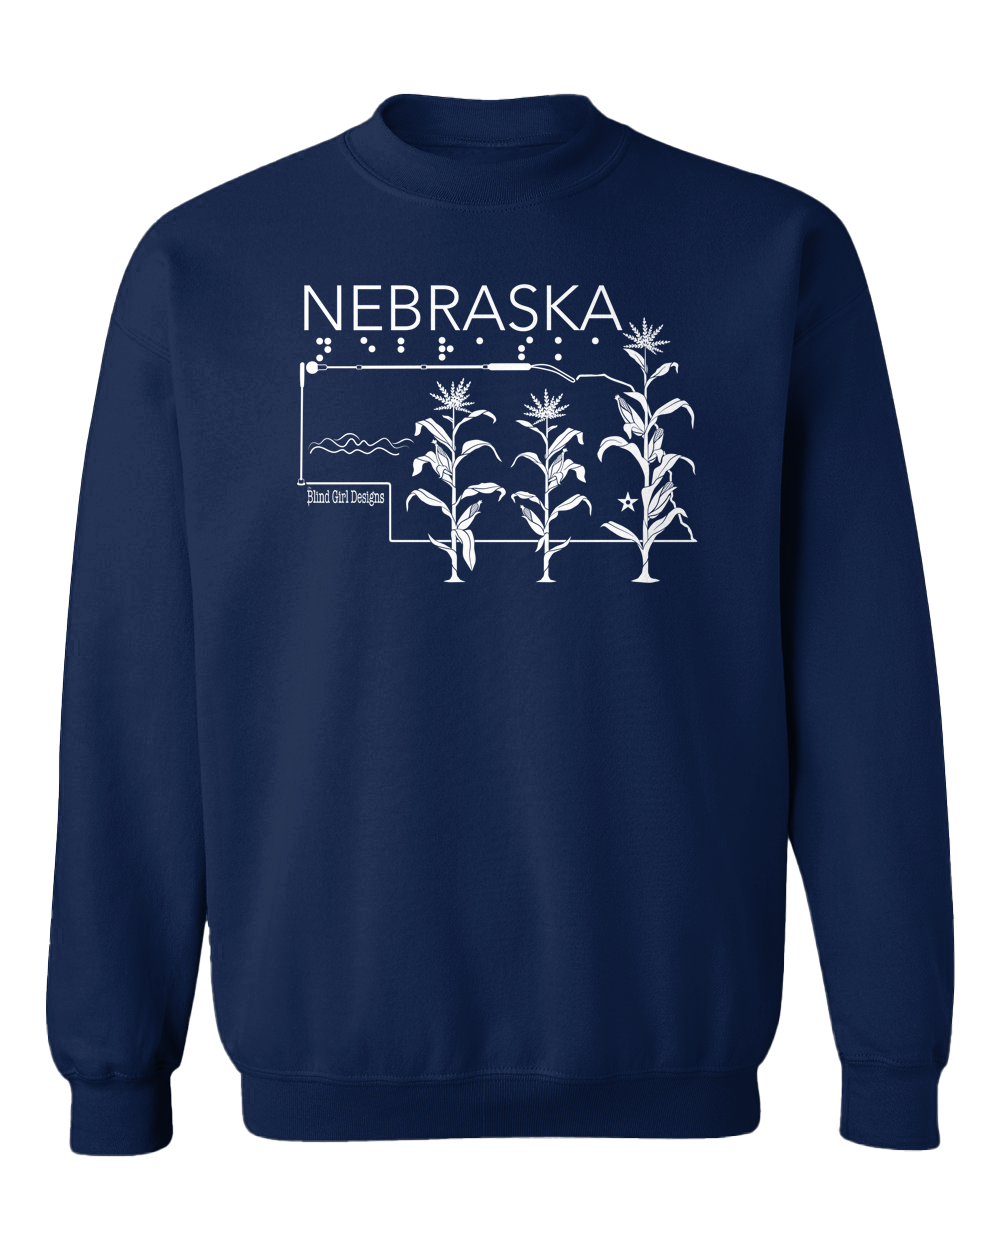 New 3D Tactile! Nebraska State Sweatshirt - Navy